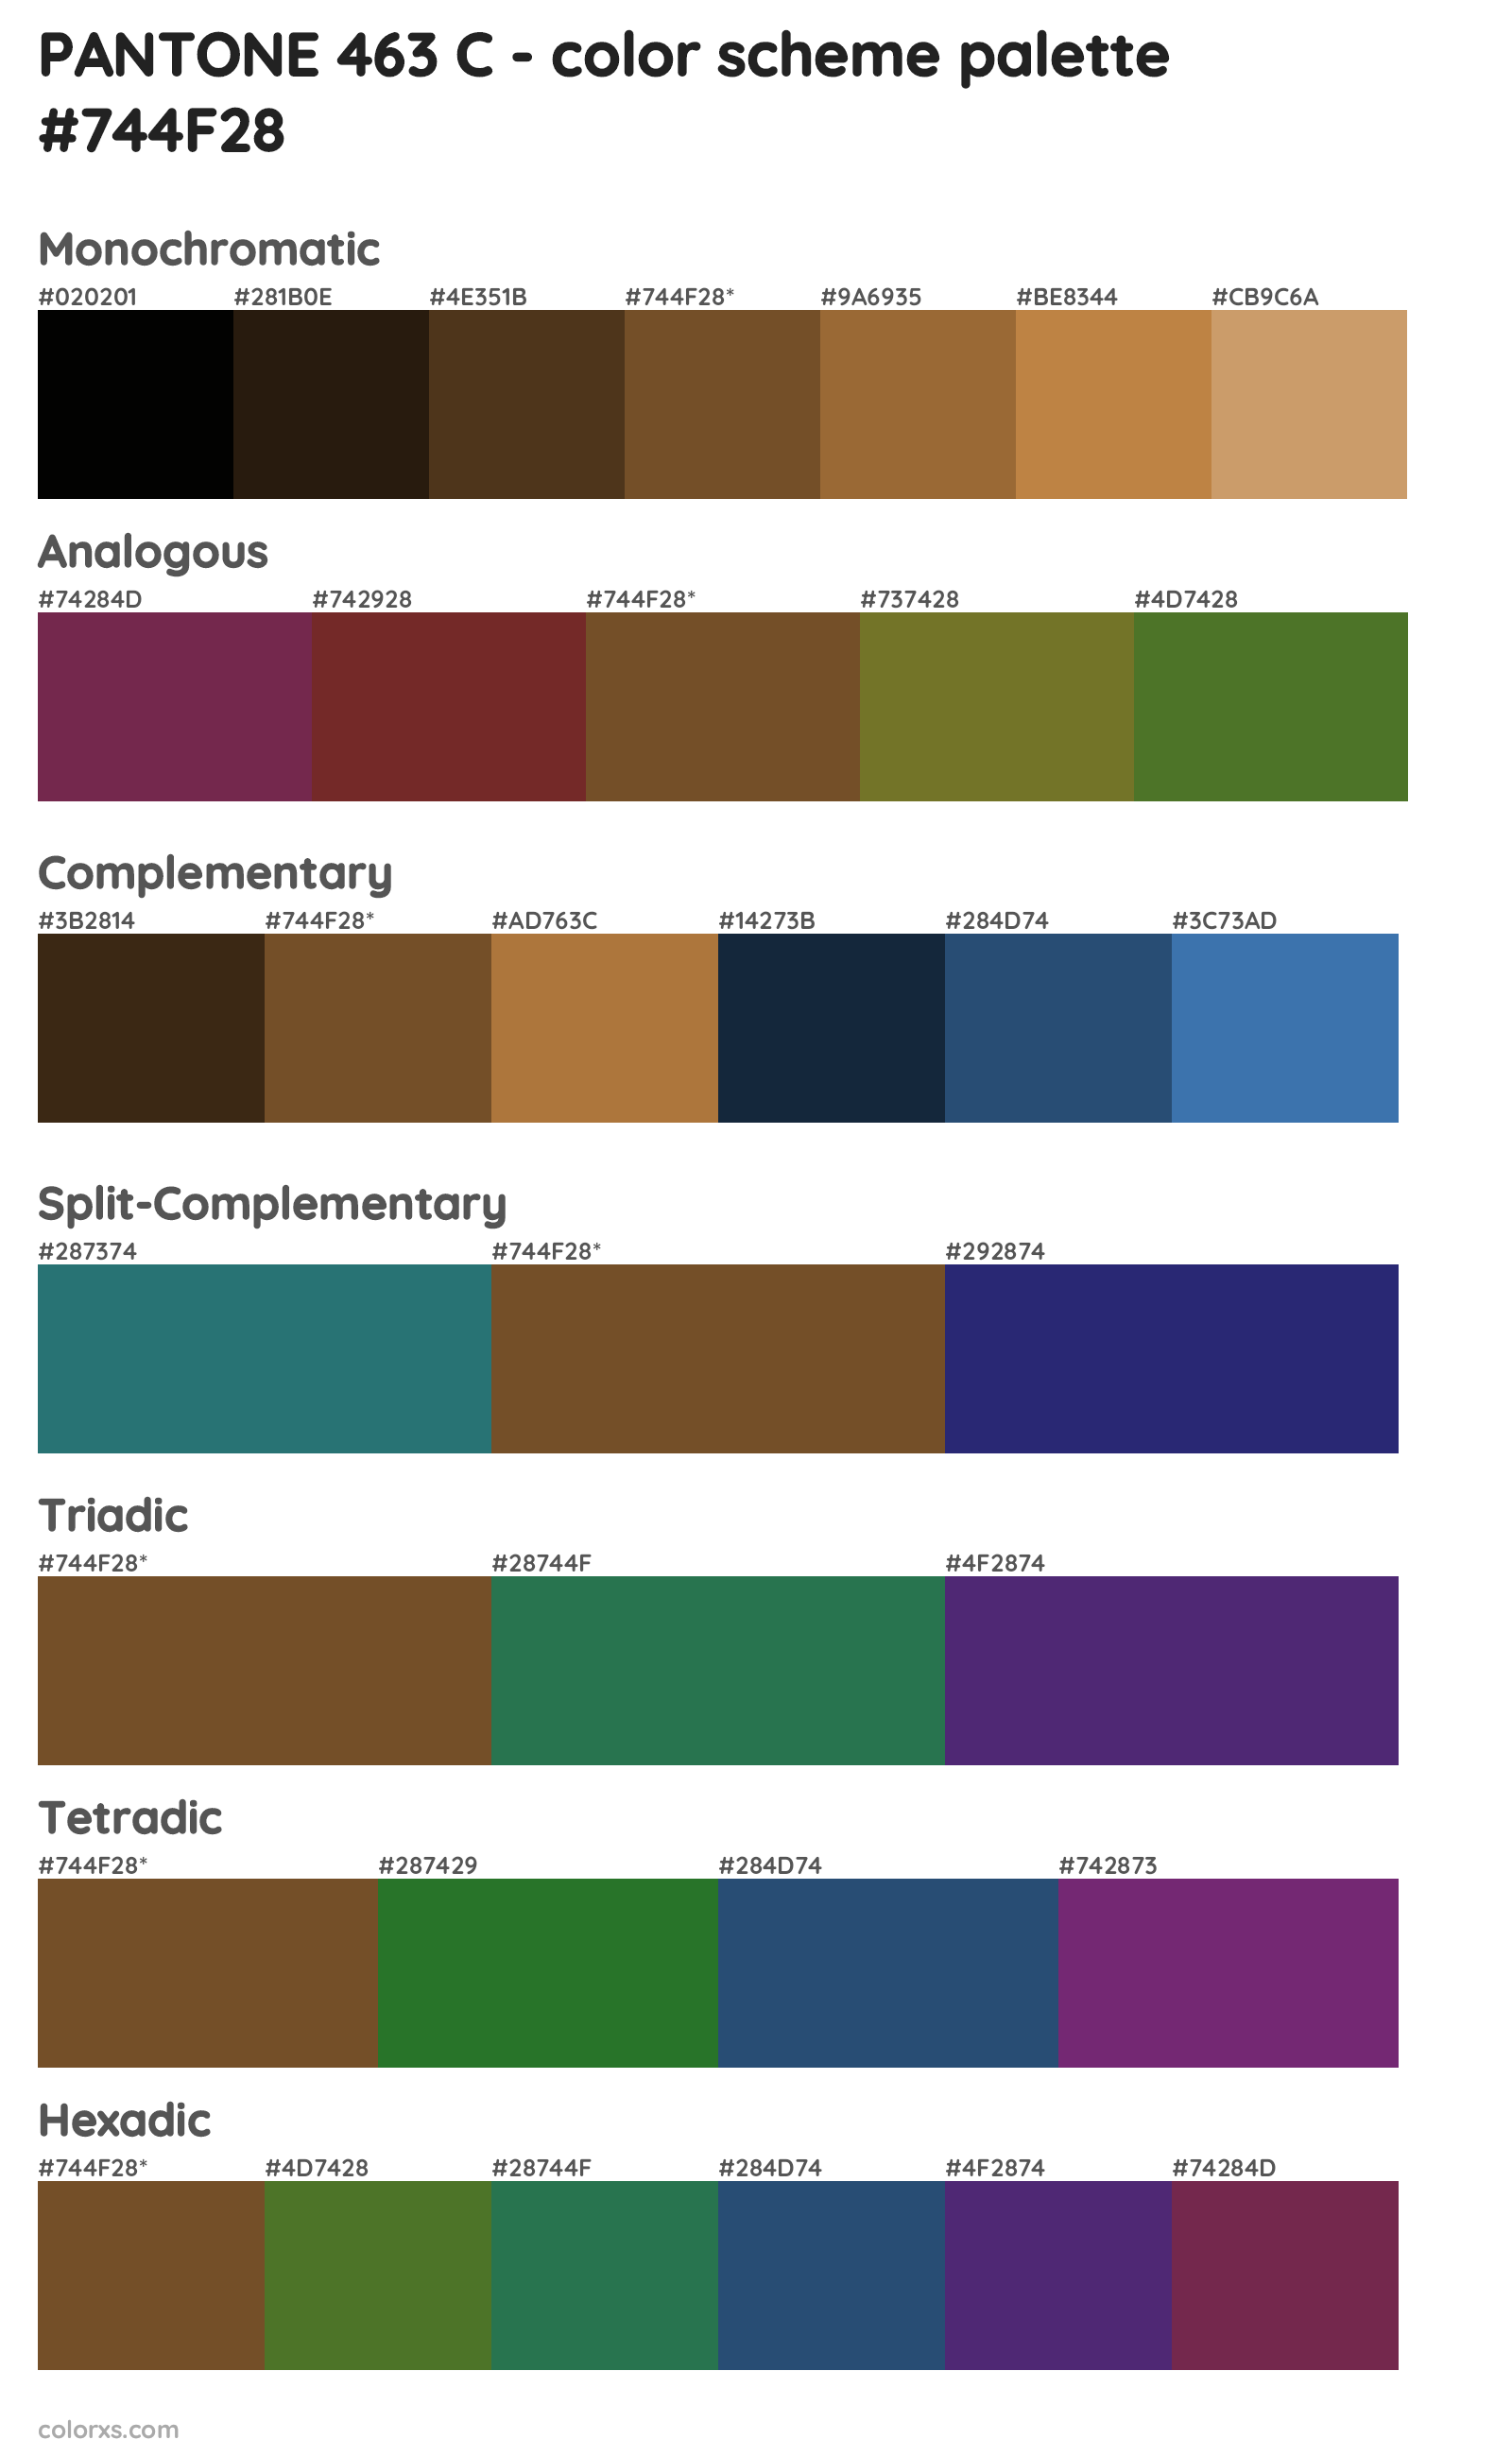 PANTONE 463 C Color Scheme Palettes